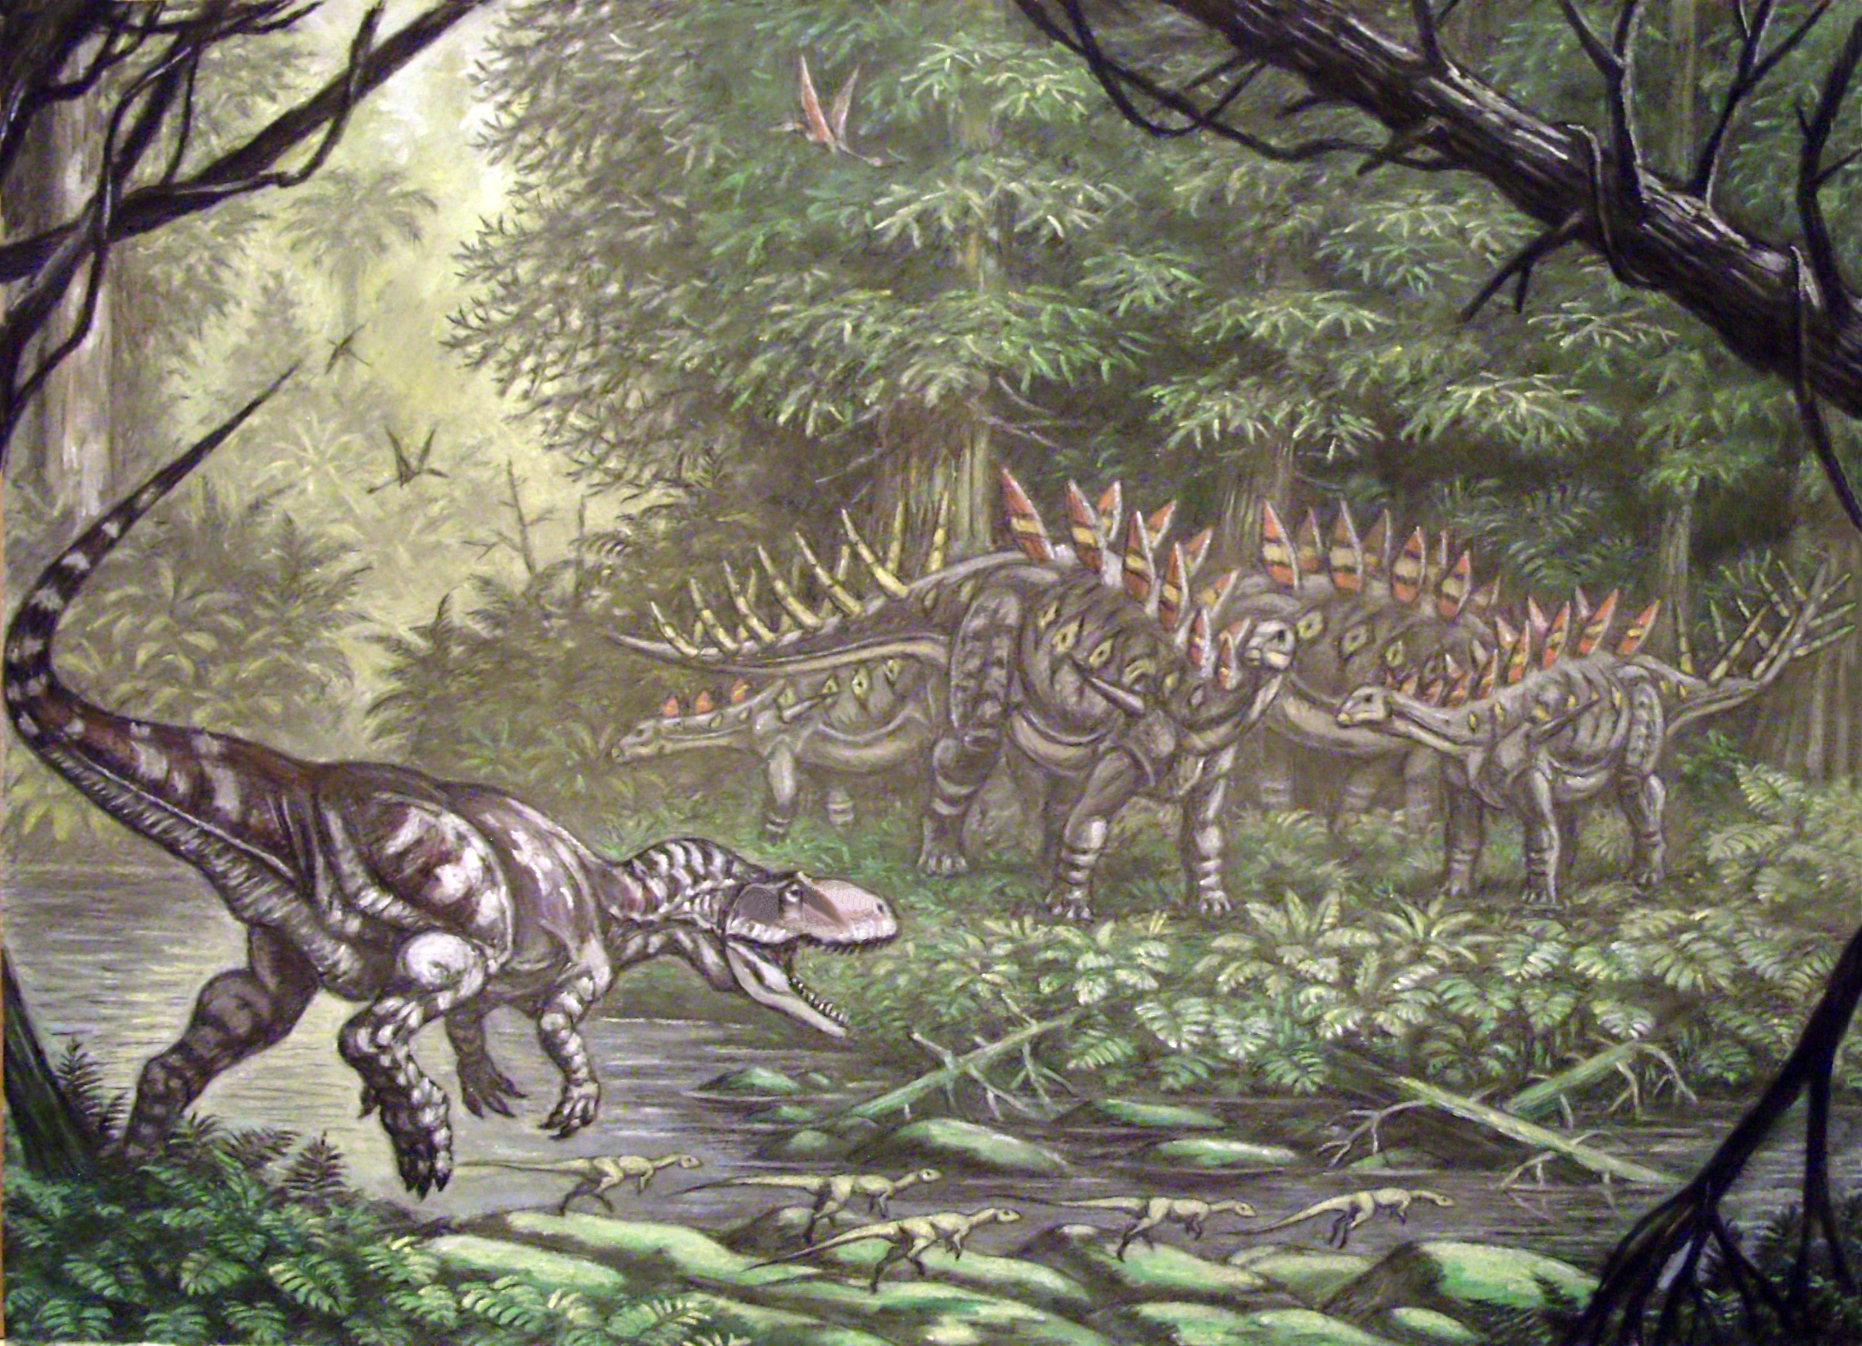 Ekologická scenérie zachycující útočícího metriakantosaurida (nejspíše rodu Eustreptospondylus) a skupinu stegosaurů rodu Lexovisaurus. Jedná se o výjev z ekosystému souvrství Oxford Clay, do kterého bychom mohli dosadit i metriakantosaura. Kredit: A